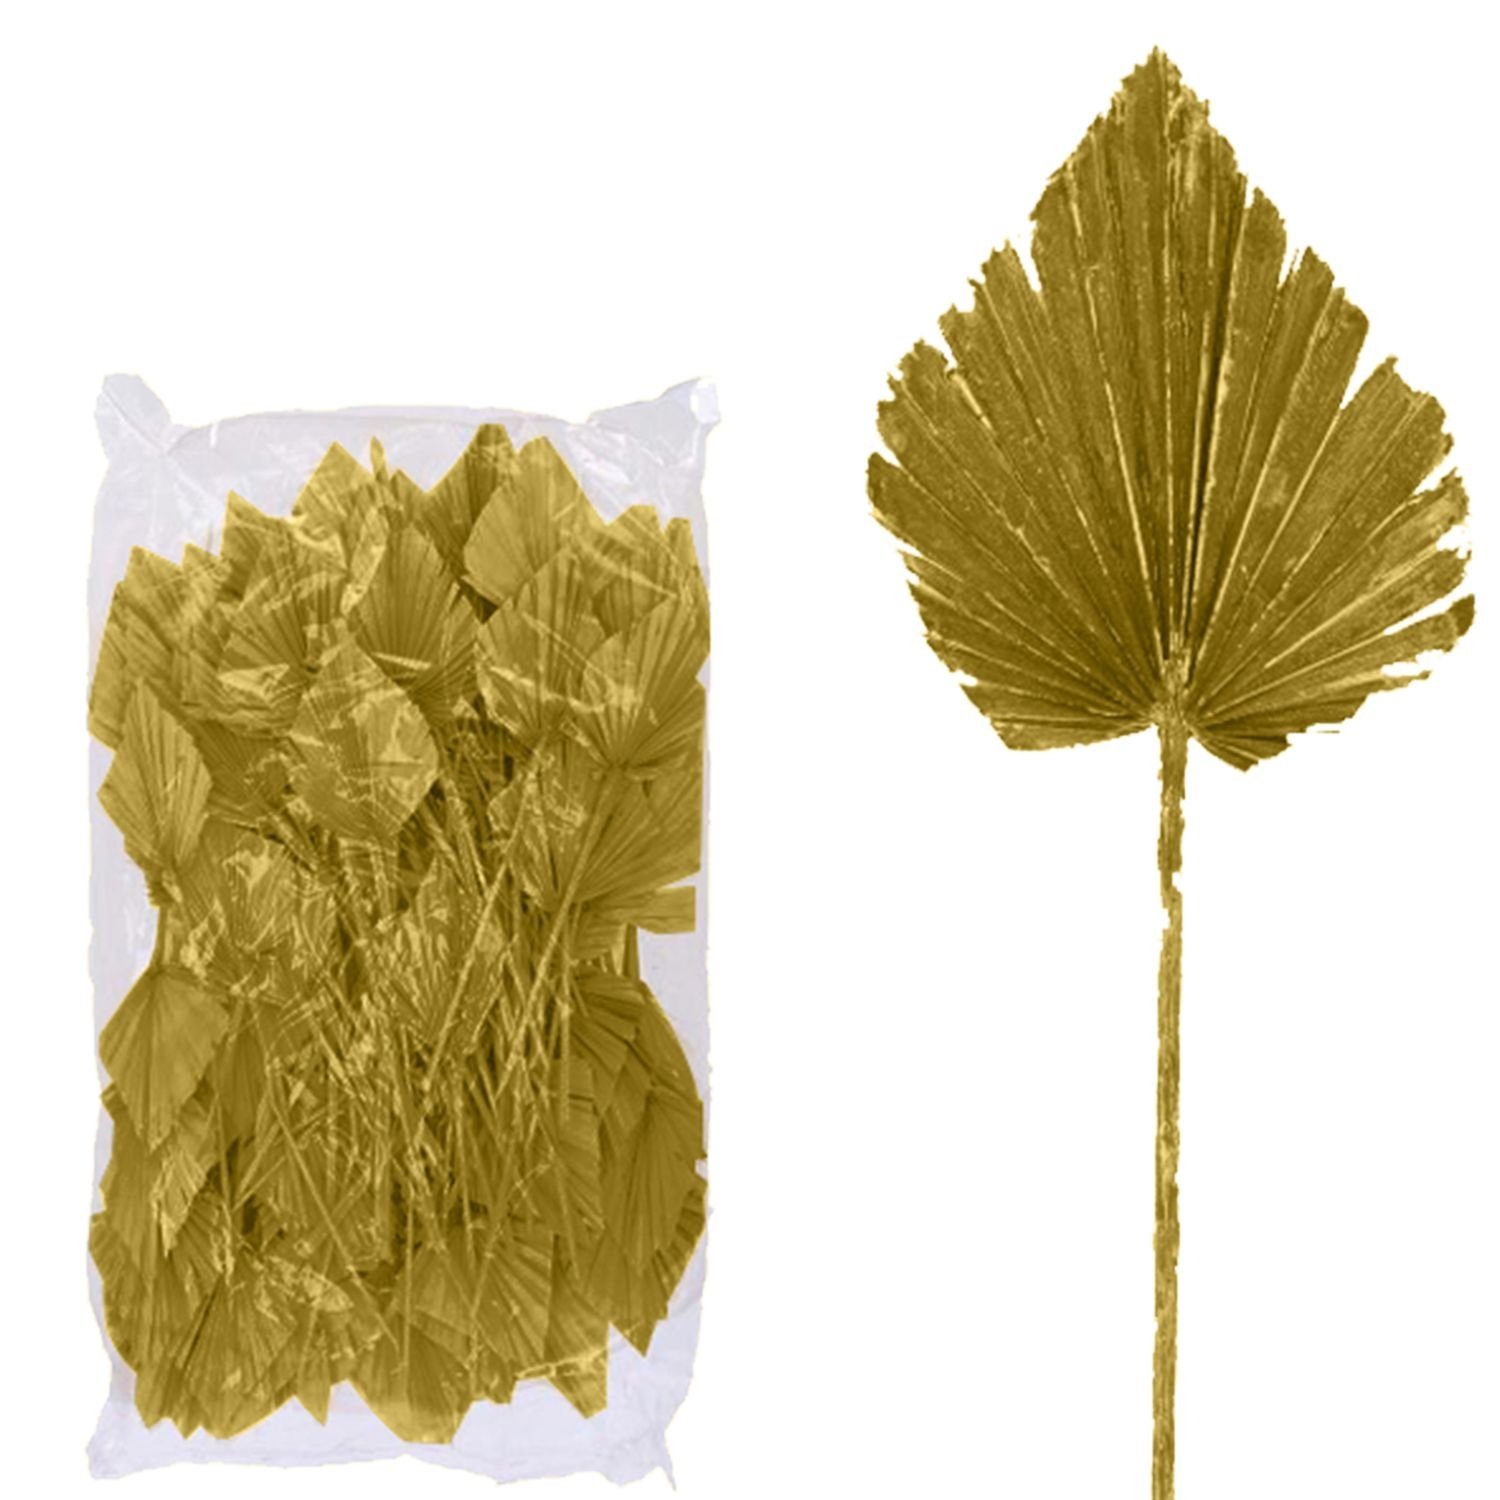 Trockenblume Palmspear ind. groß - 100 Stück Beutel - gold, Vosteen